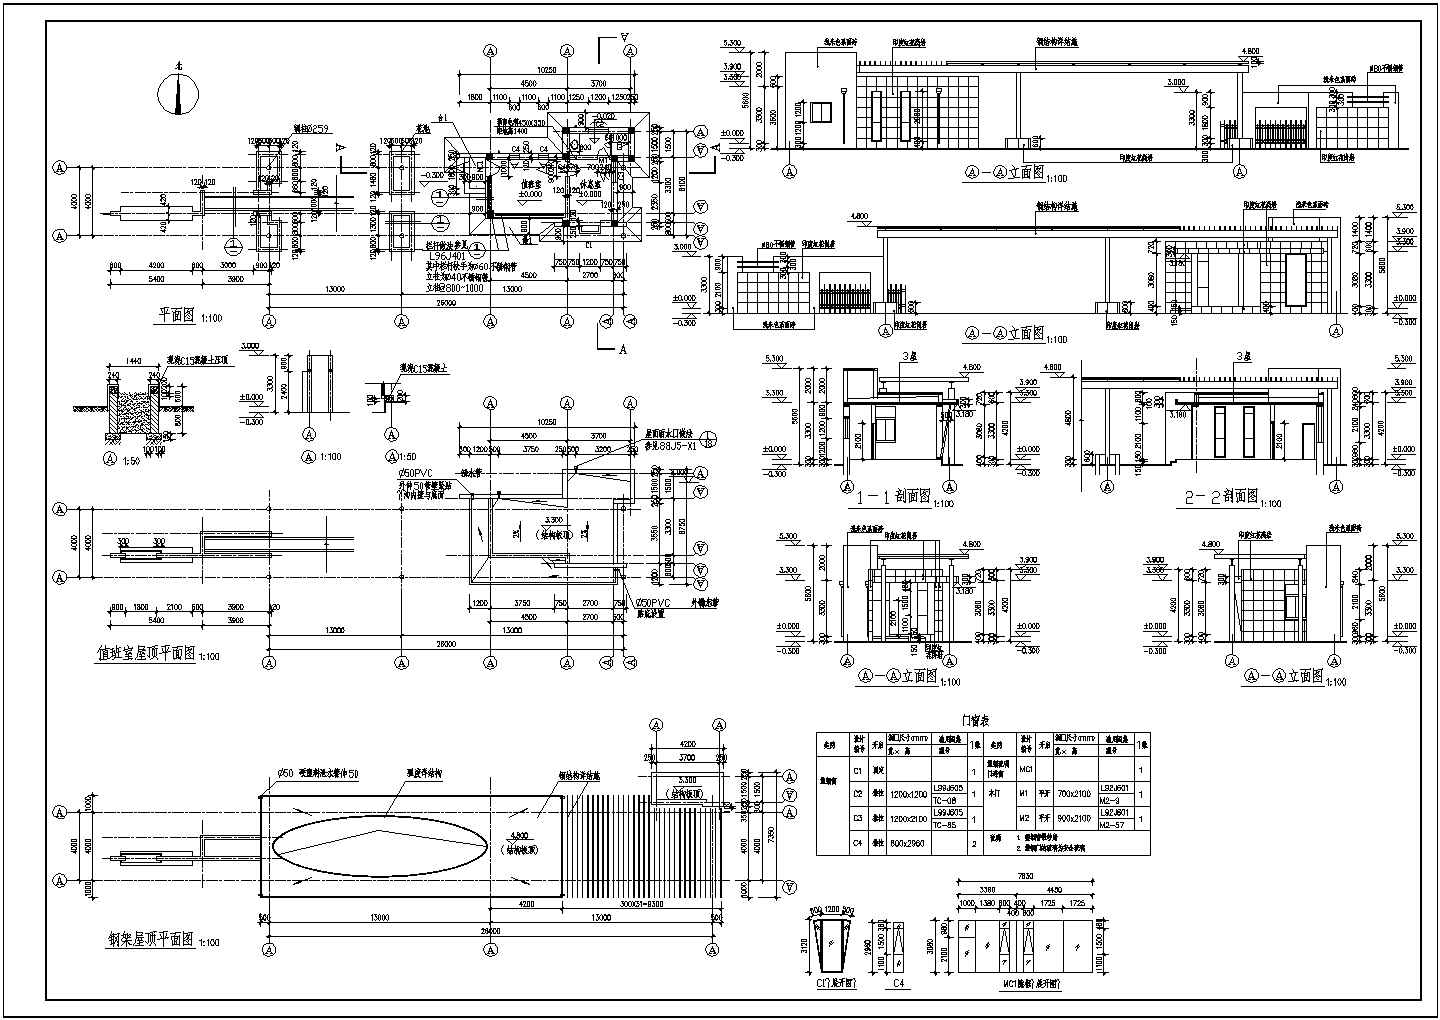 【江西】某工程部大门建筑设计施工CAD全套图纸